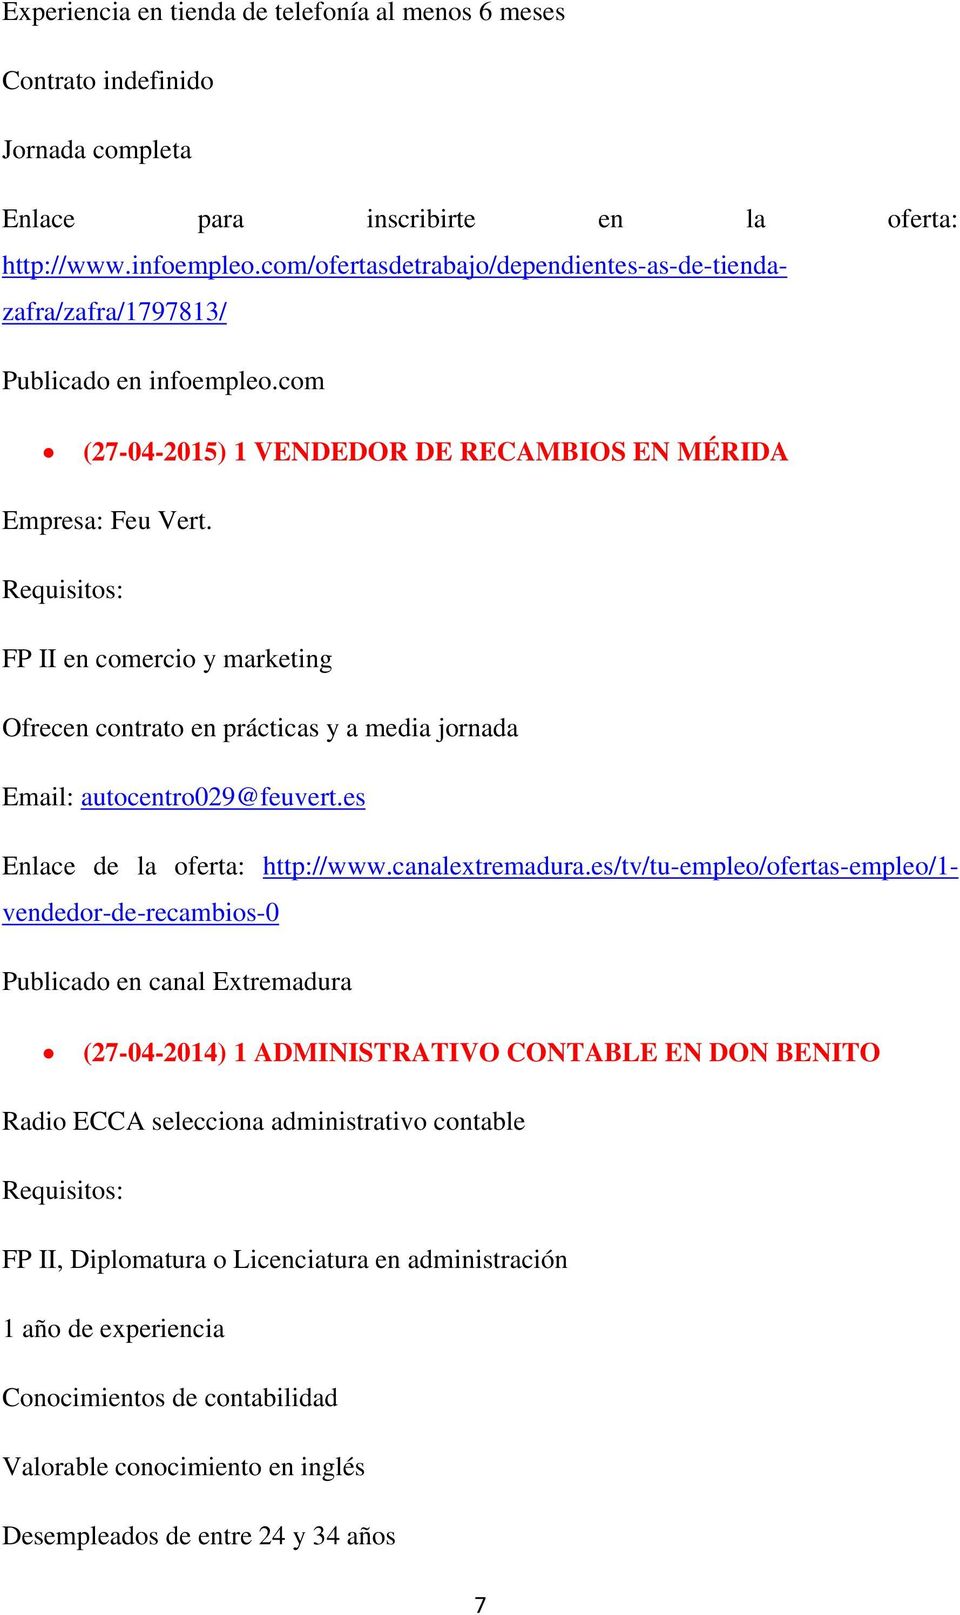 FP II en comercio y marketing Ofrecen contrato en prácticas y a media jornada Email: autocentro029@feuvert.es Enlace de la oferta: http://www.canalextremadura.